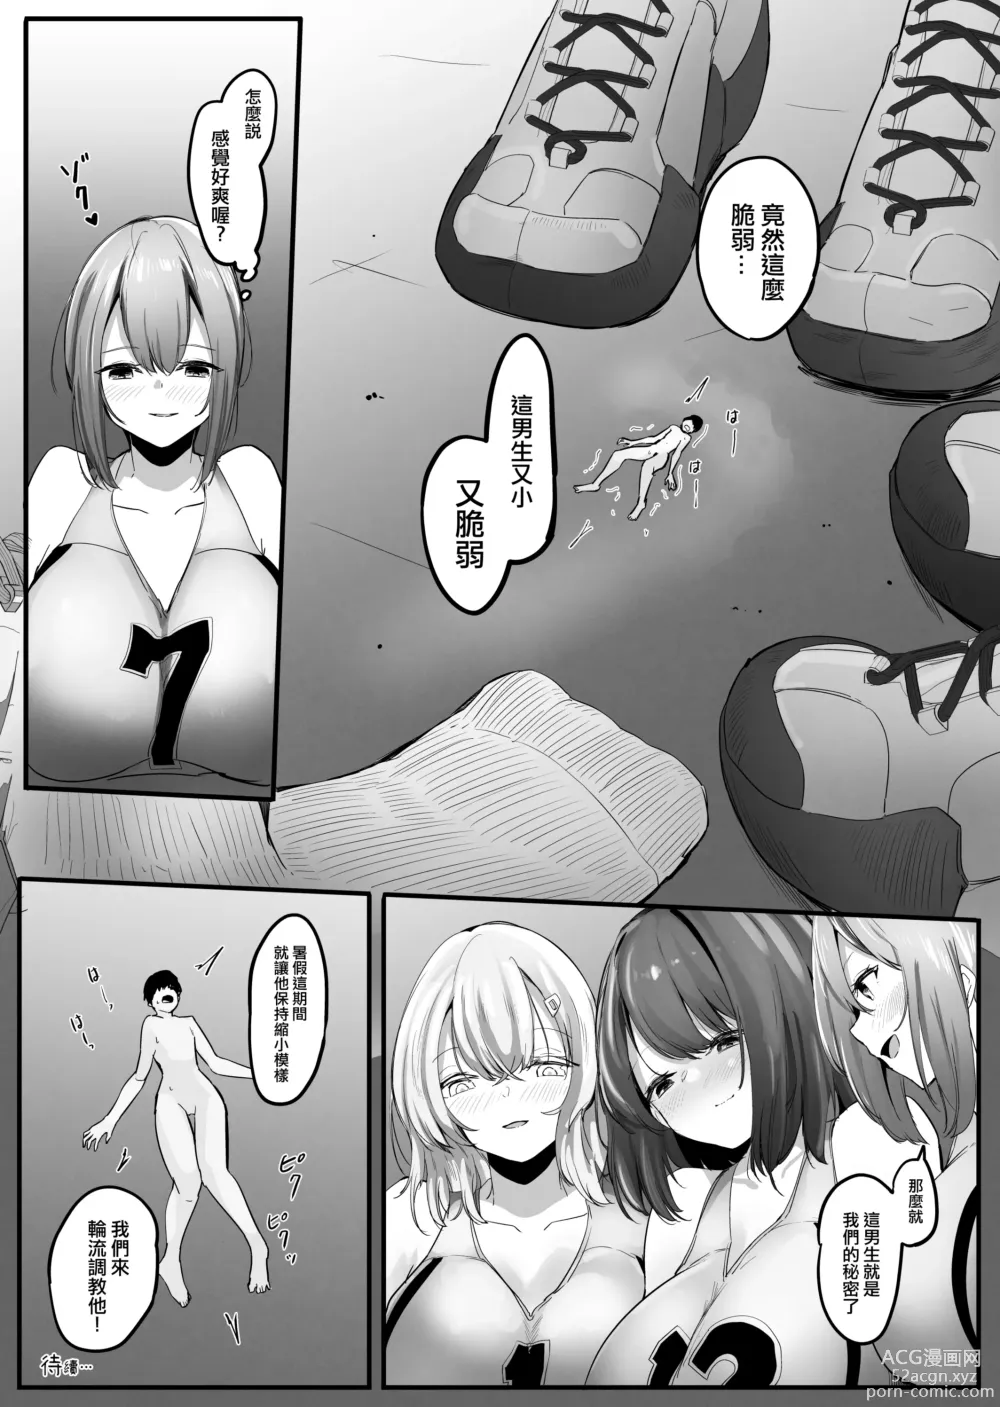 Page 12 of manga Chiisaku sareta Natsuyasumi